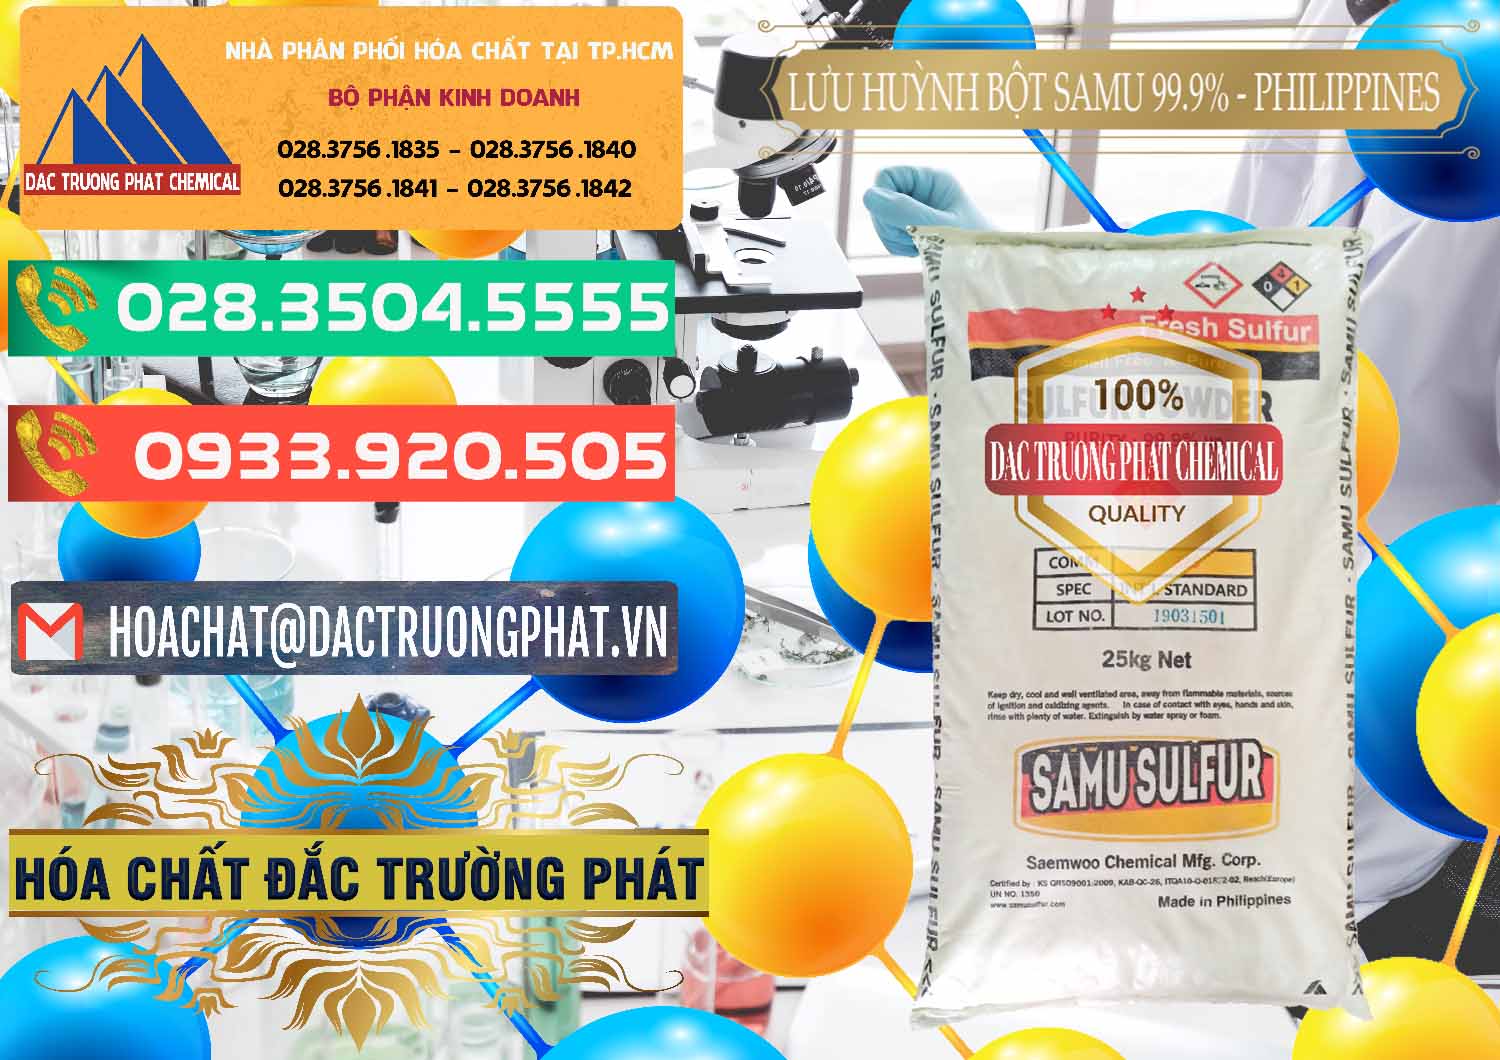 Nơi chuyên kinh doanh ( bán ) Lưu huỳnh Bột - Sulfur Powder Samu Philippines - 0201 - Nhà phân phối & nhập khẩu hóa chất tại TP.HCM - congtyhoachat.com.vn